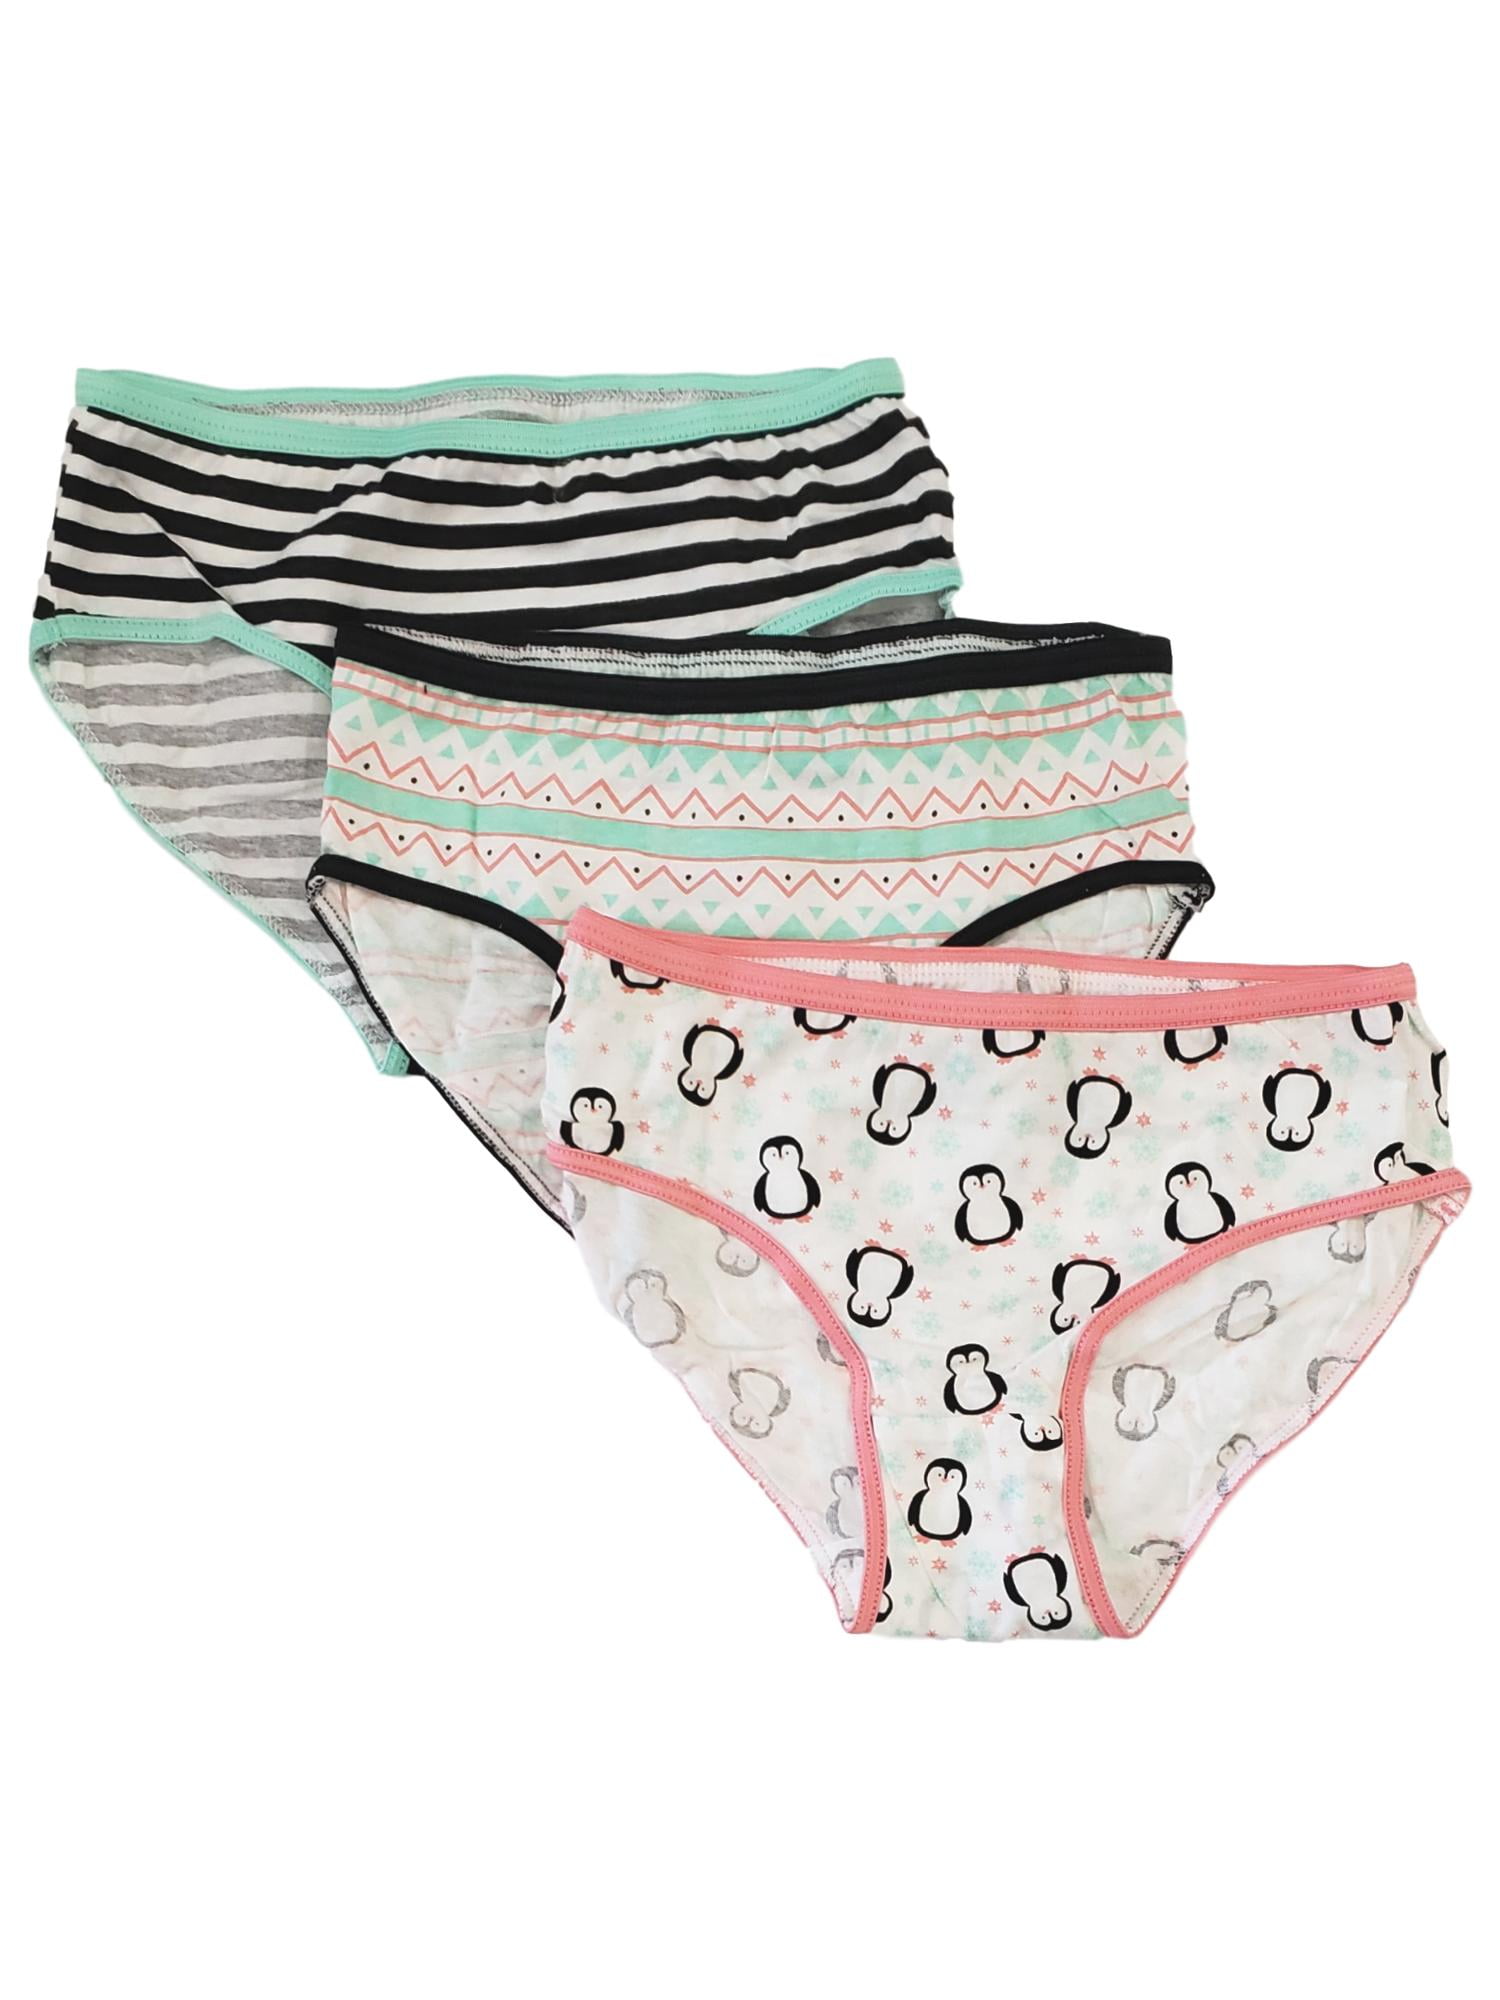 Cat & Jack Girls Briefs Underwear 3 Pack Size Medium New in Package